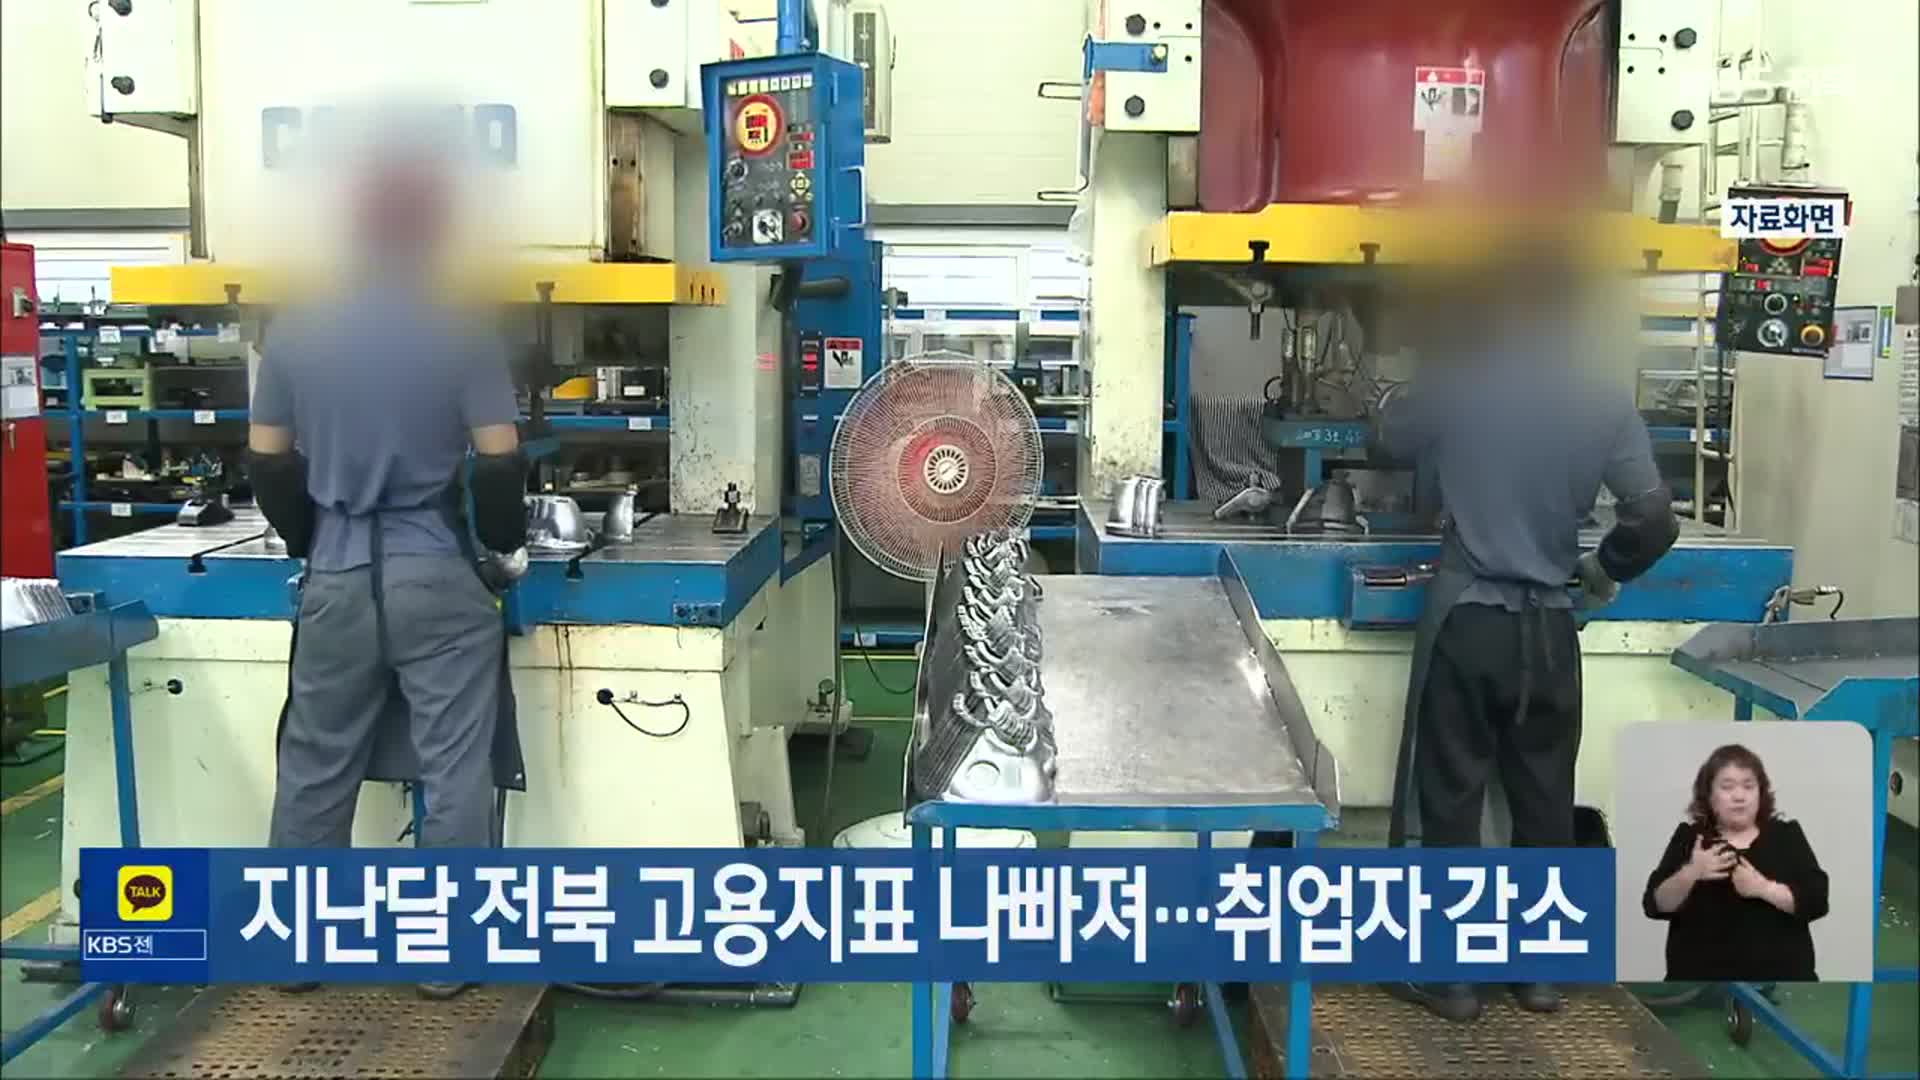 지난달 전북 고용지표 나빠져…취업자 감소